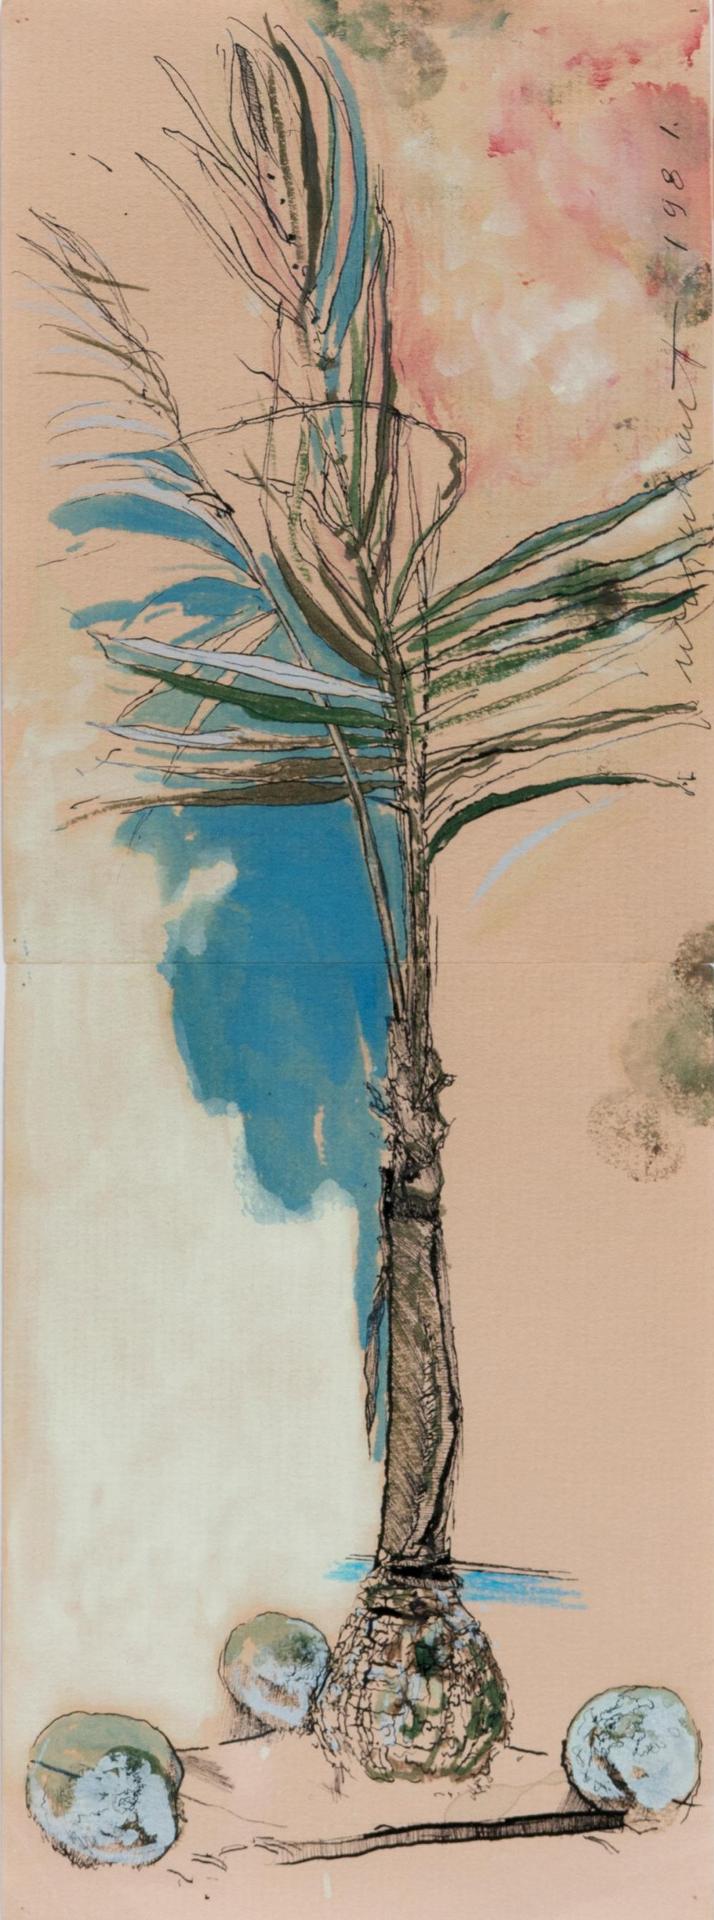 Tony (Anthony) Morse Urquhart (1934) - Palm